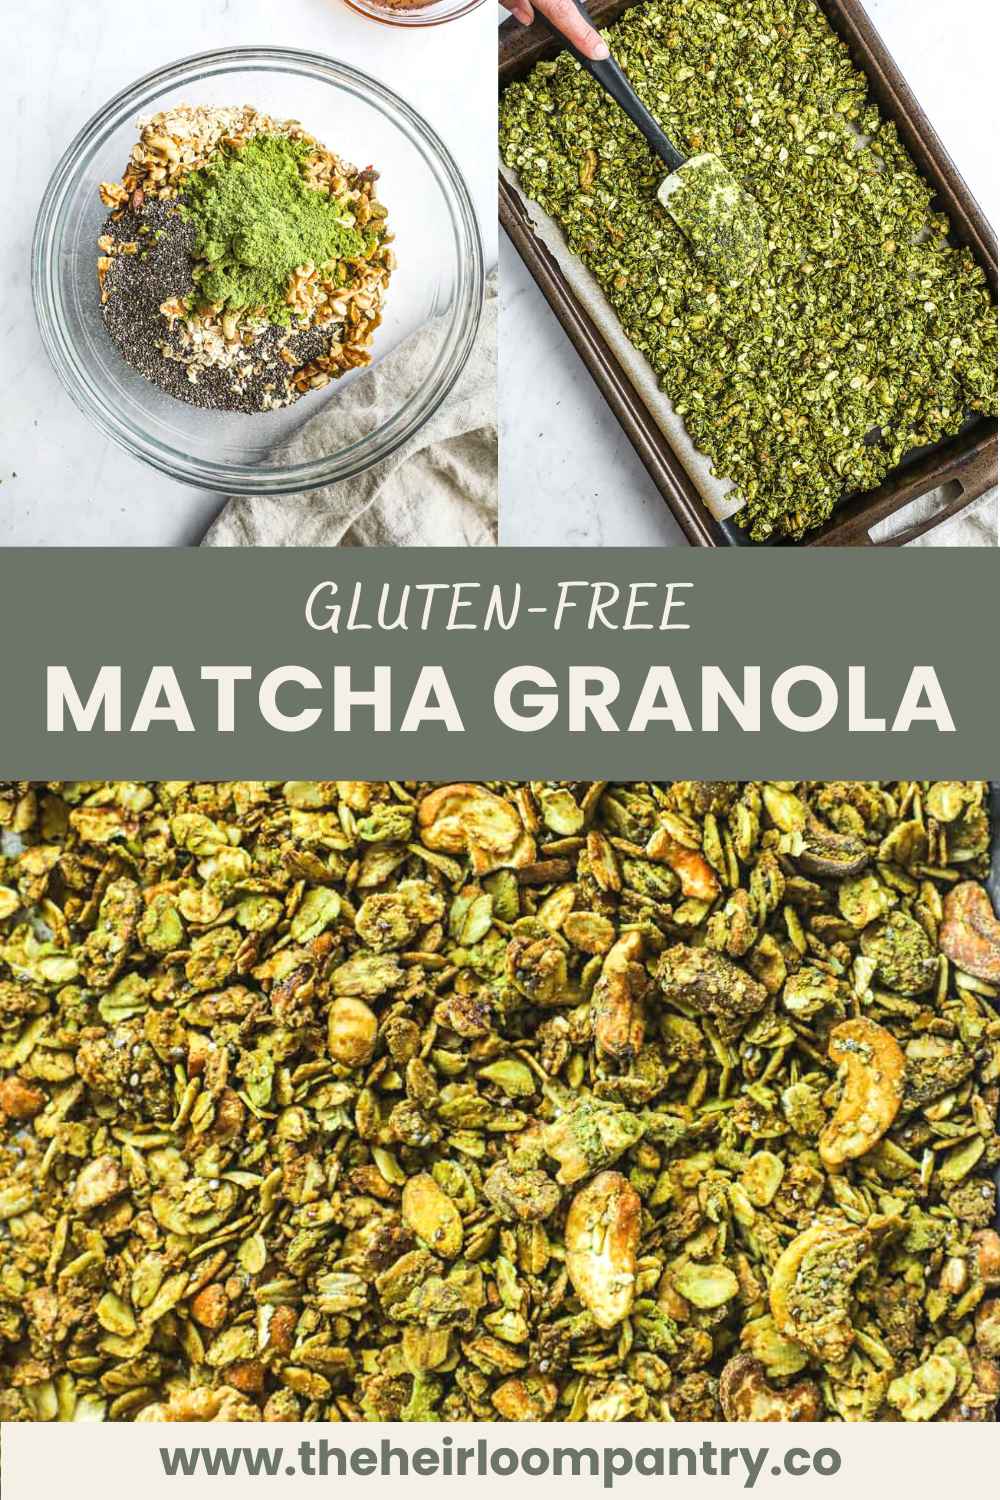 Gluten-free matcha granola Pinterest pin.